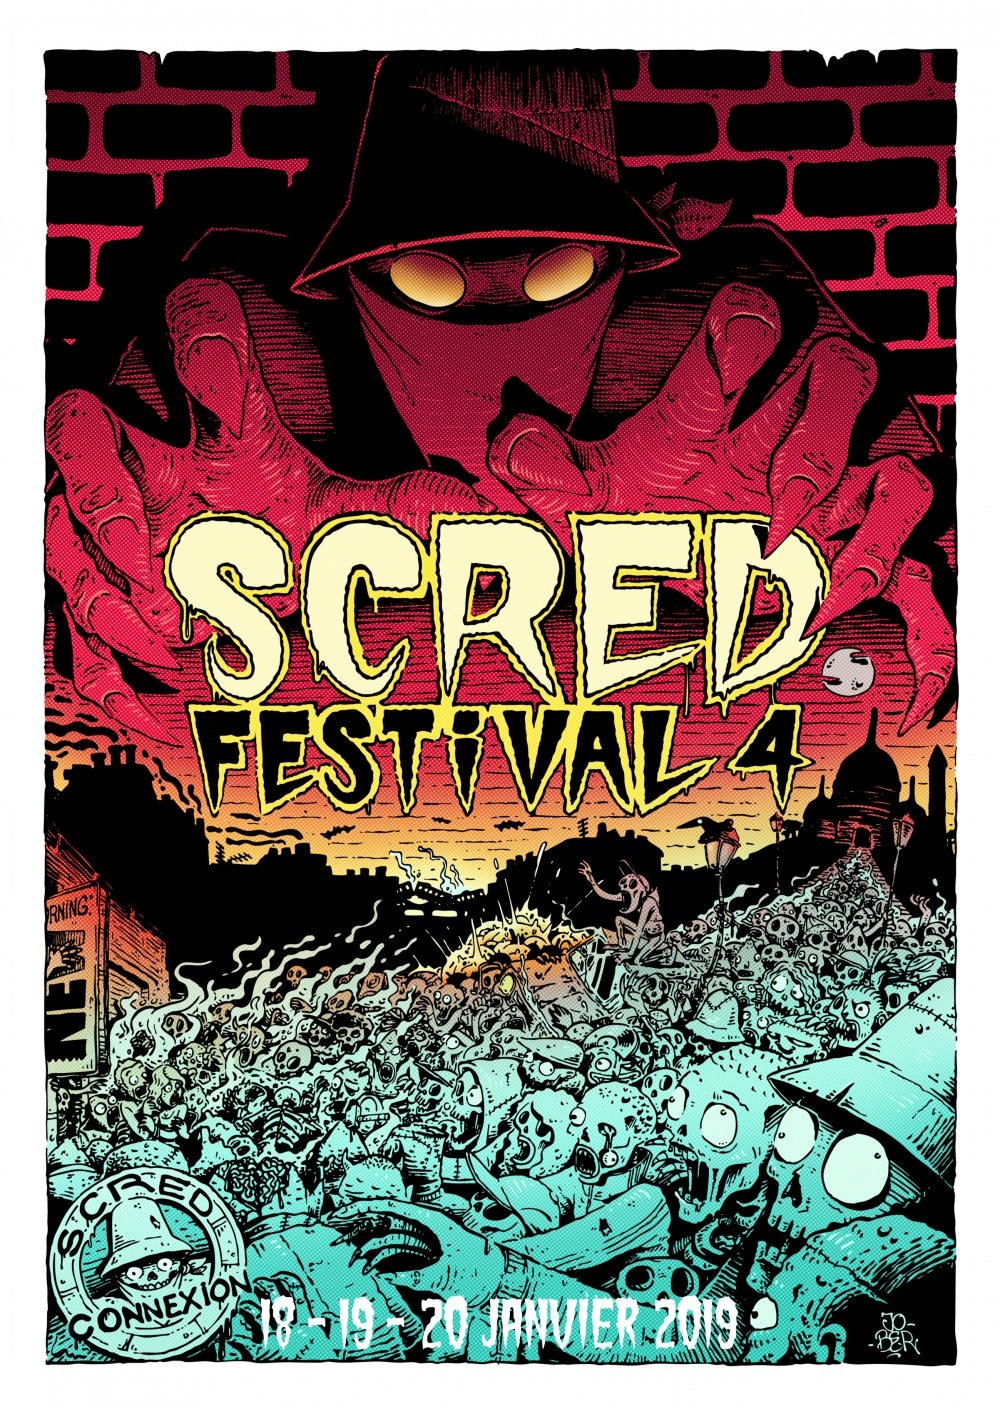 Pack 5 Affiches Scred Festival de scred connexion sur Scredboutique.com